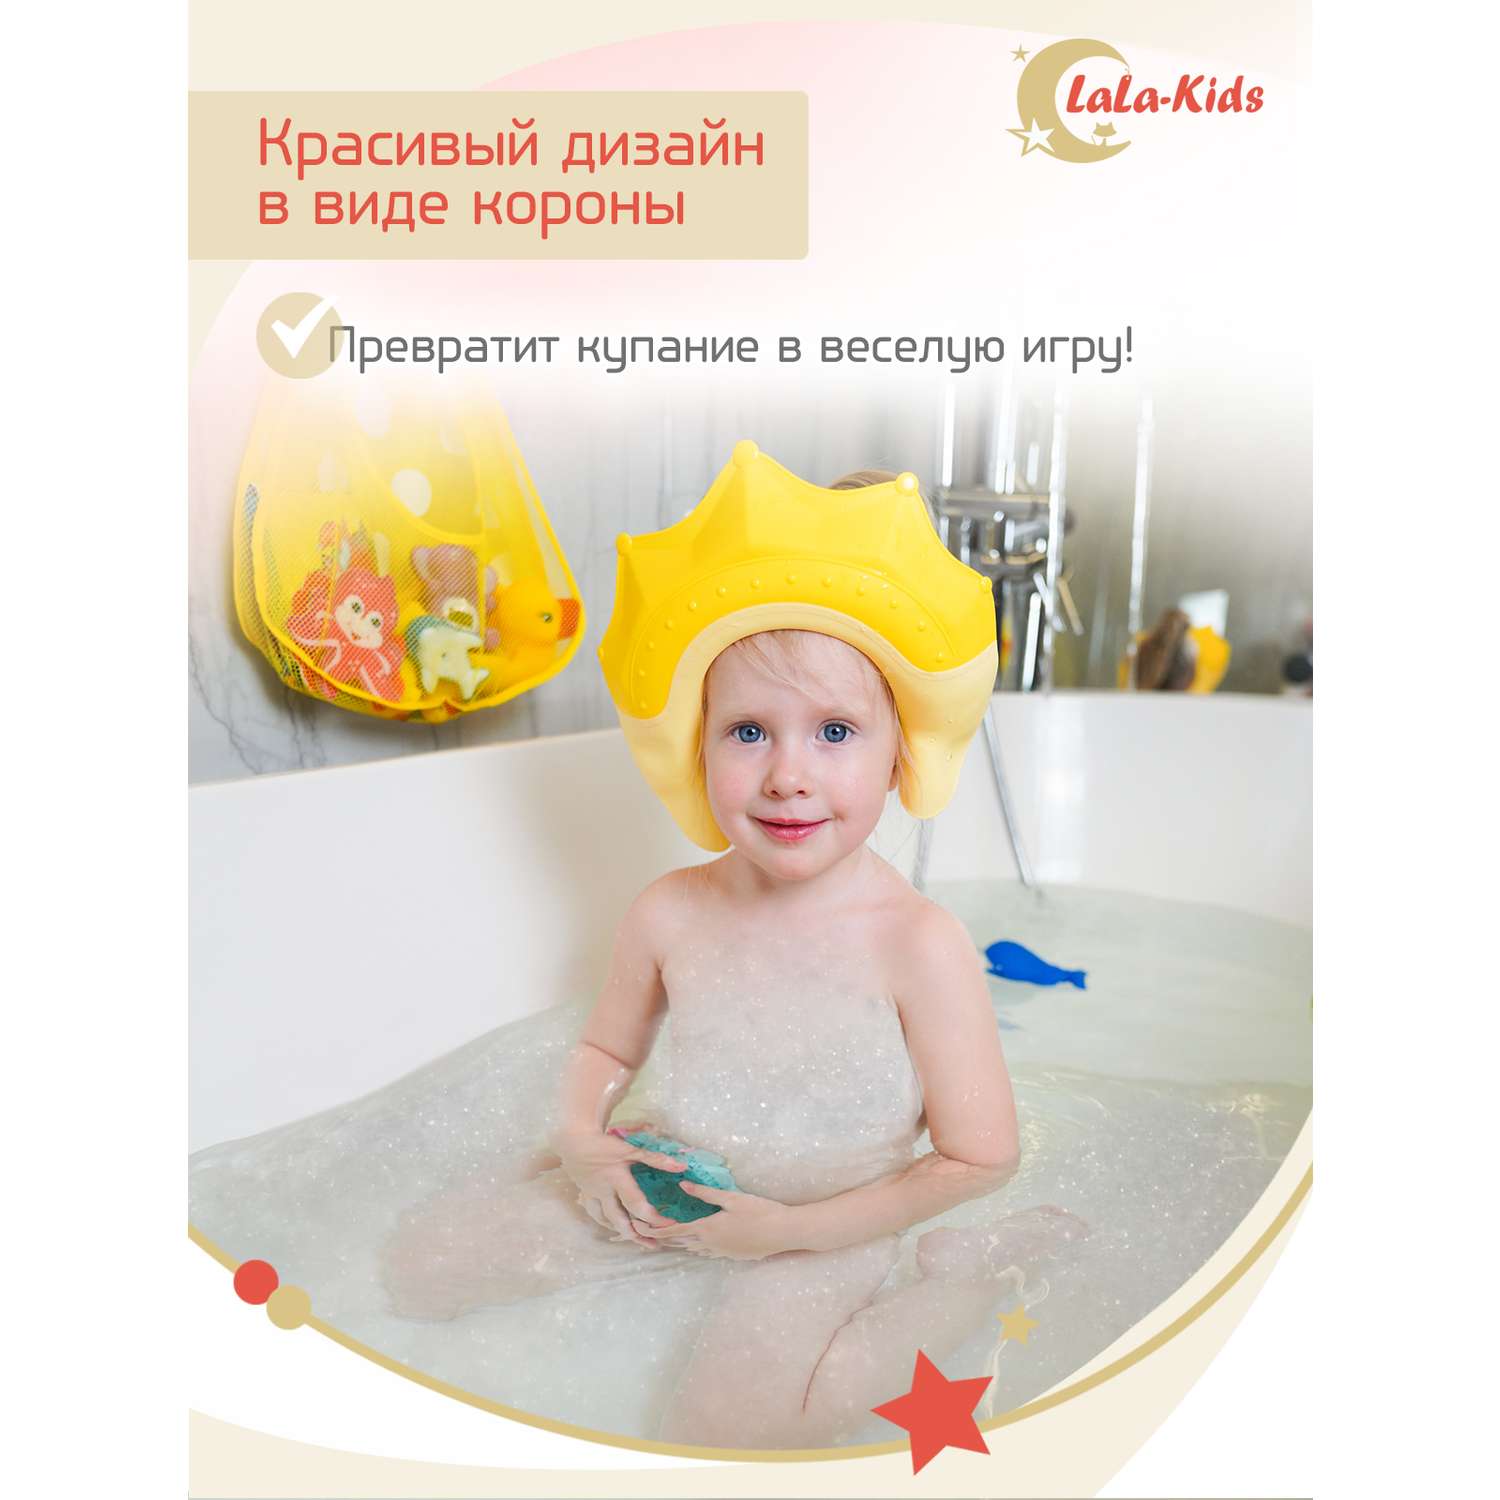 Козырек LaLa-Kids для мытья головы Корона с регулируемым размером - фото 9